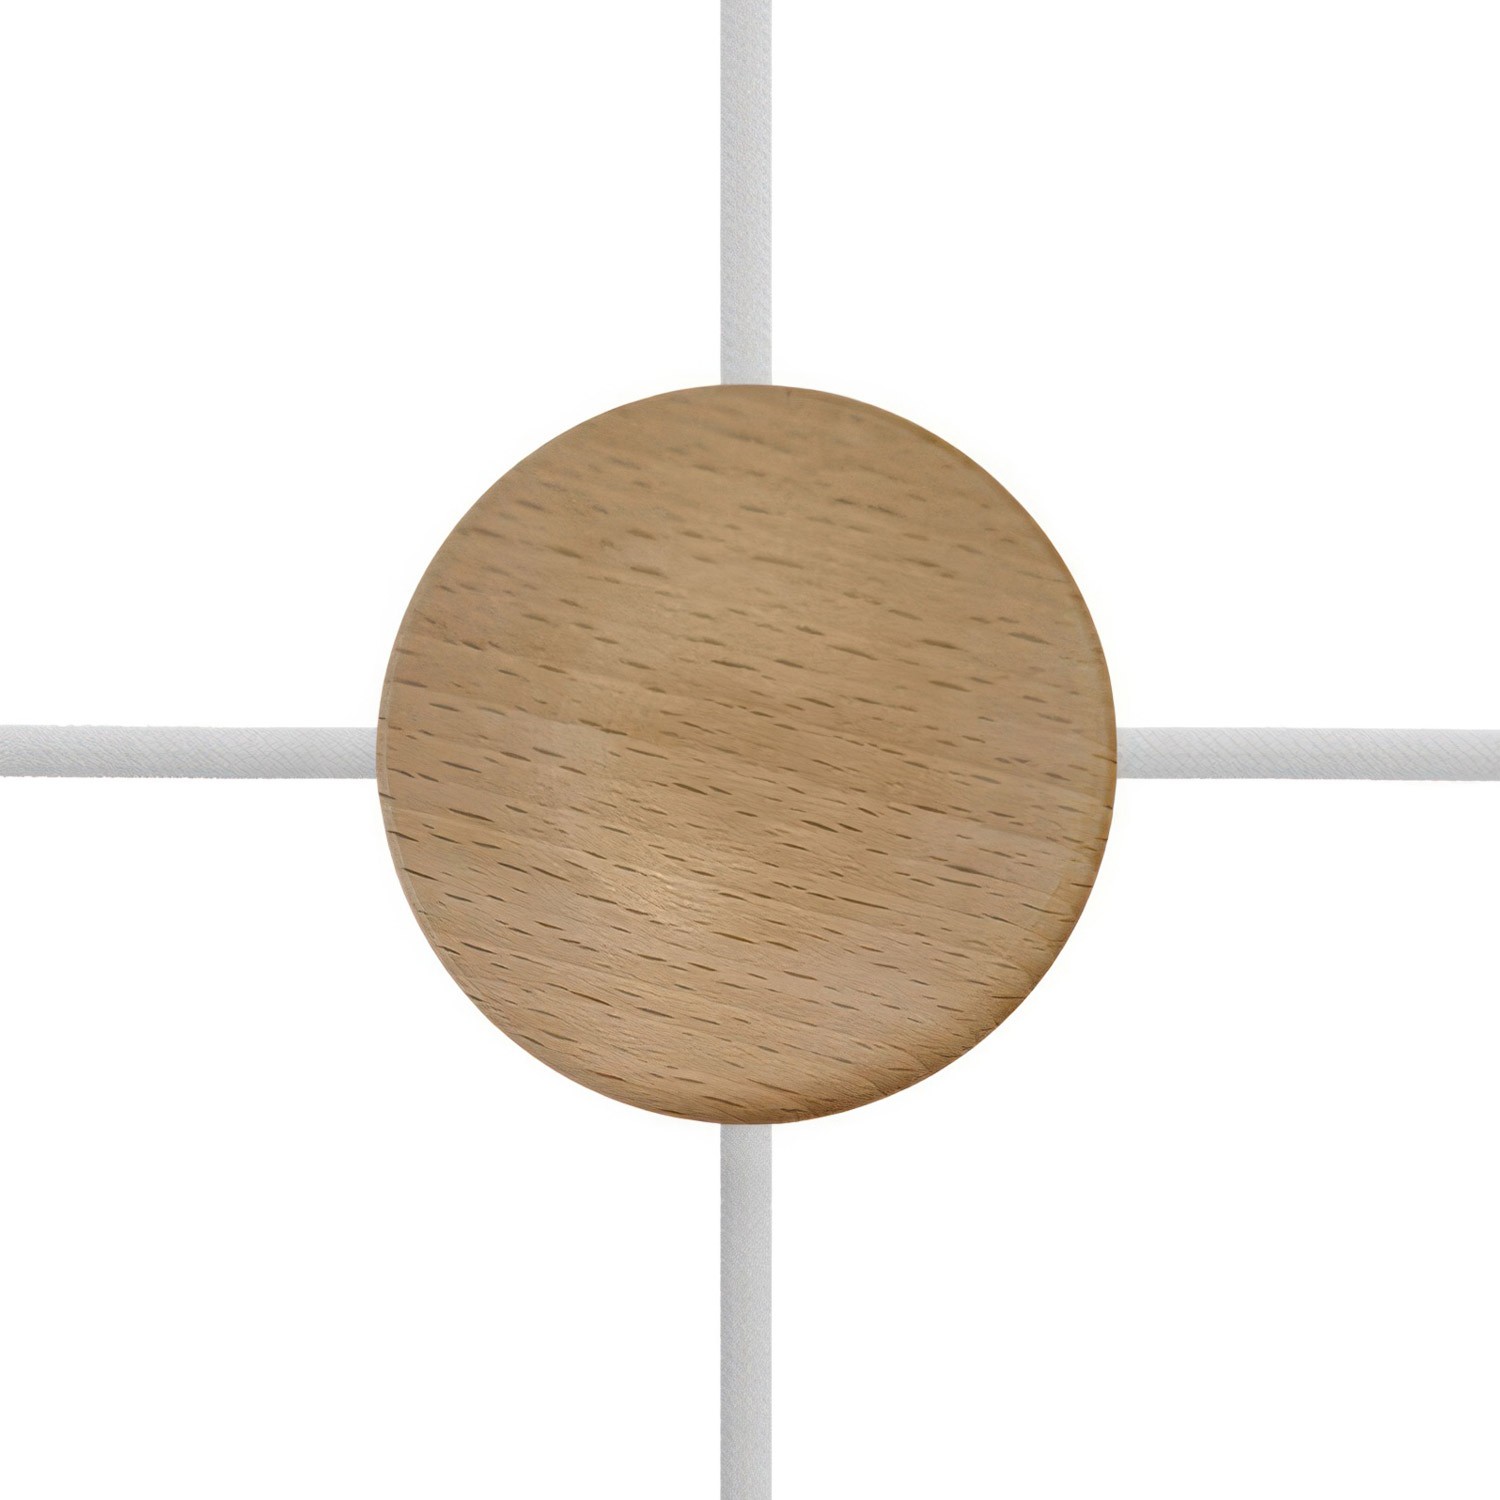 Kit mini cylindrisk takkopp i trä med 4 sidohål (kopplingsdosa)